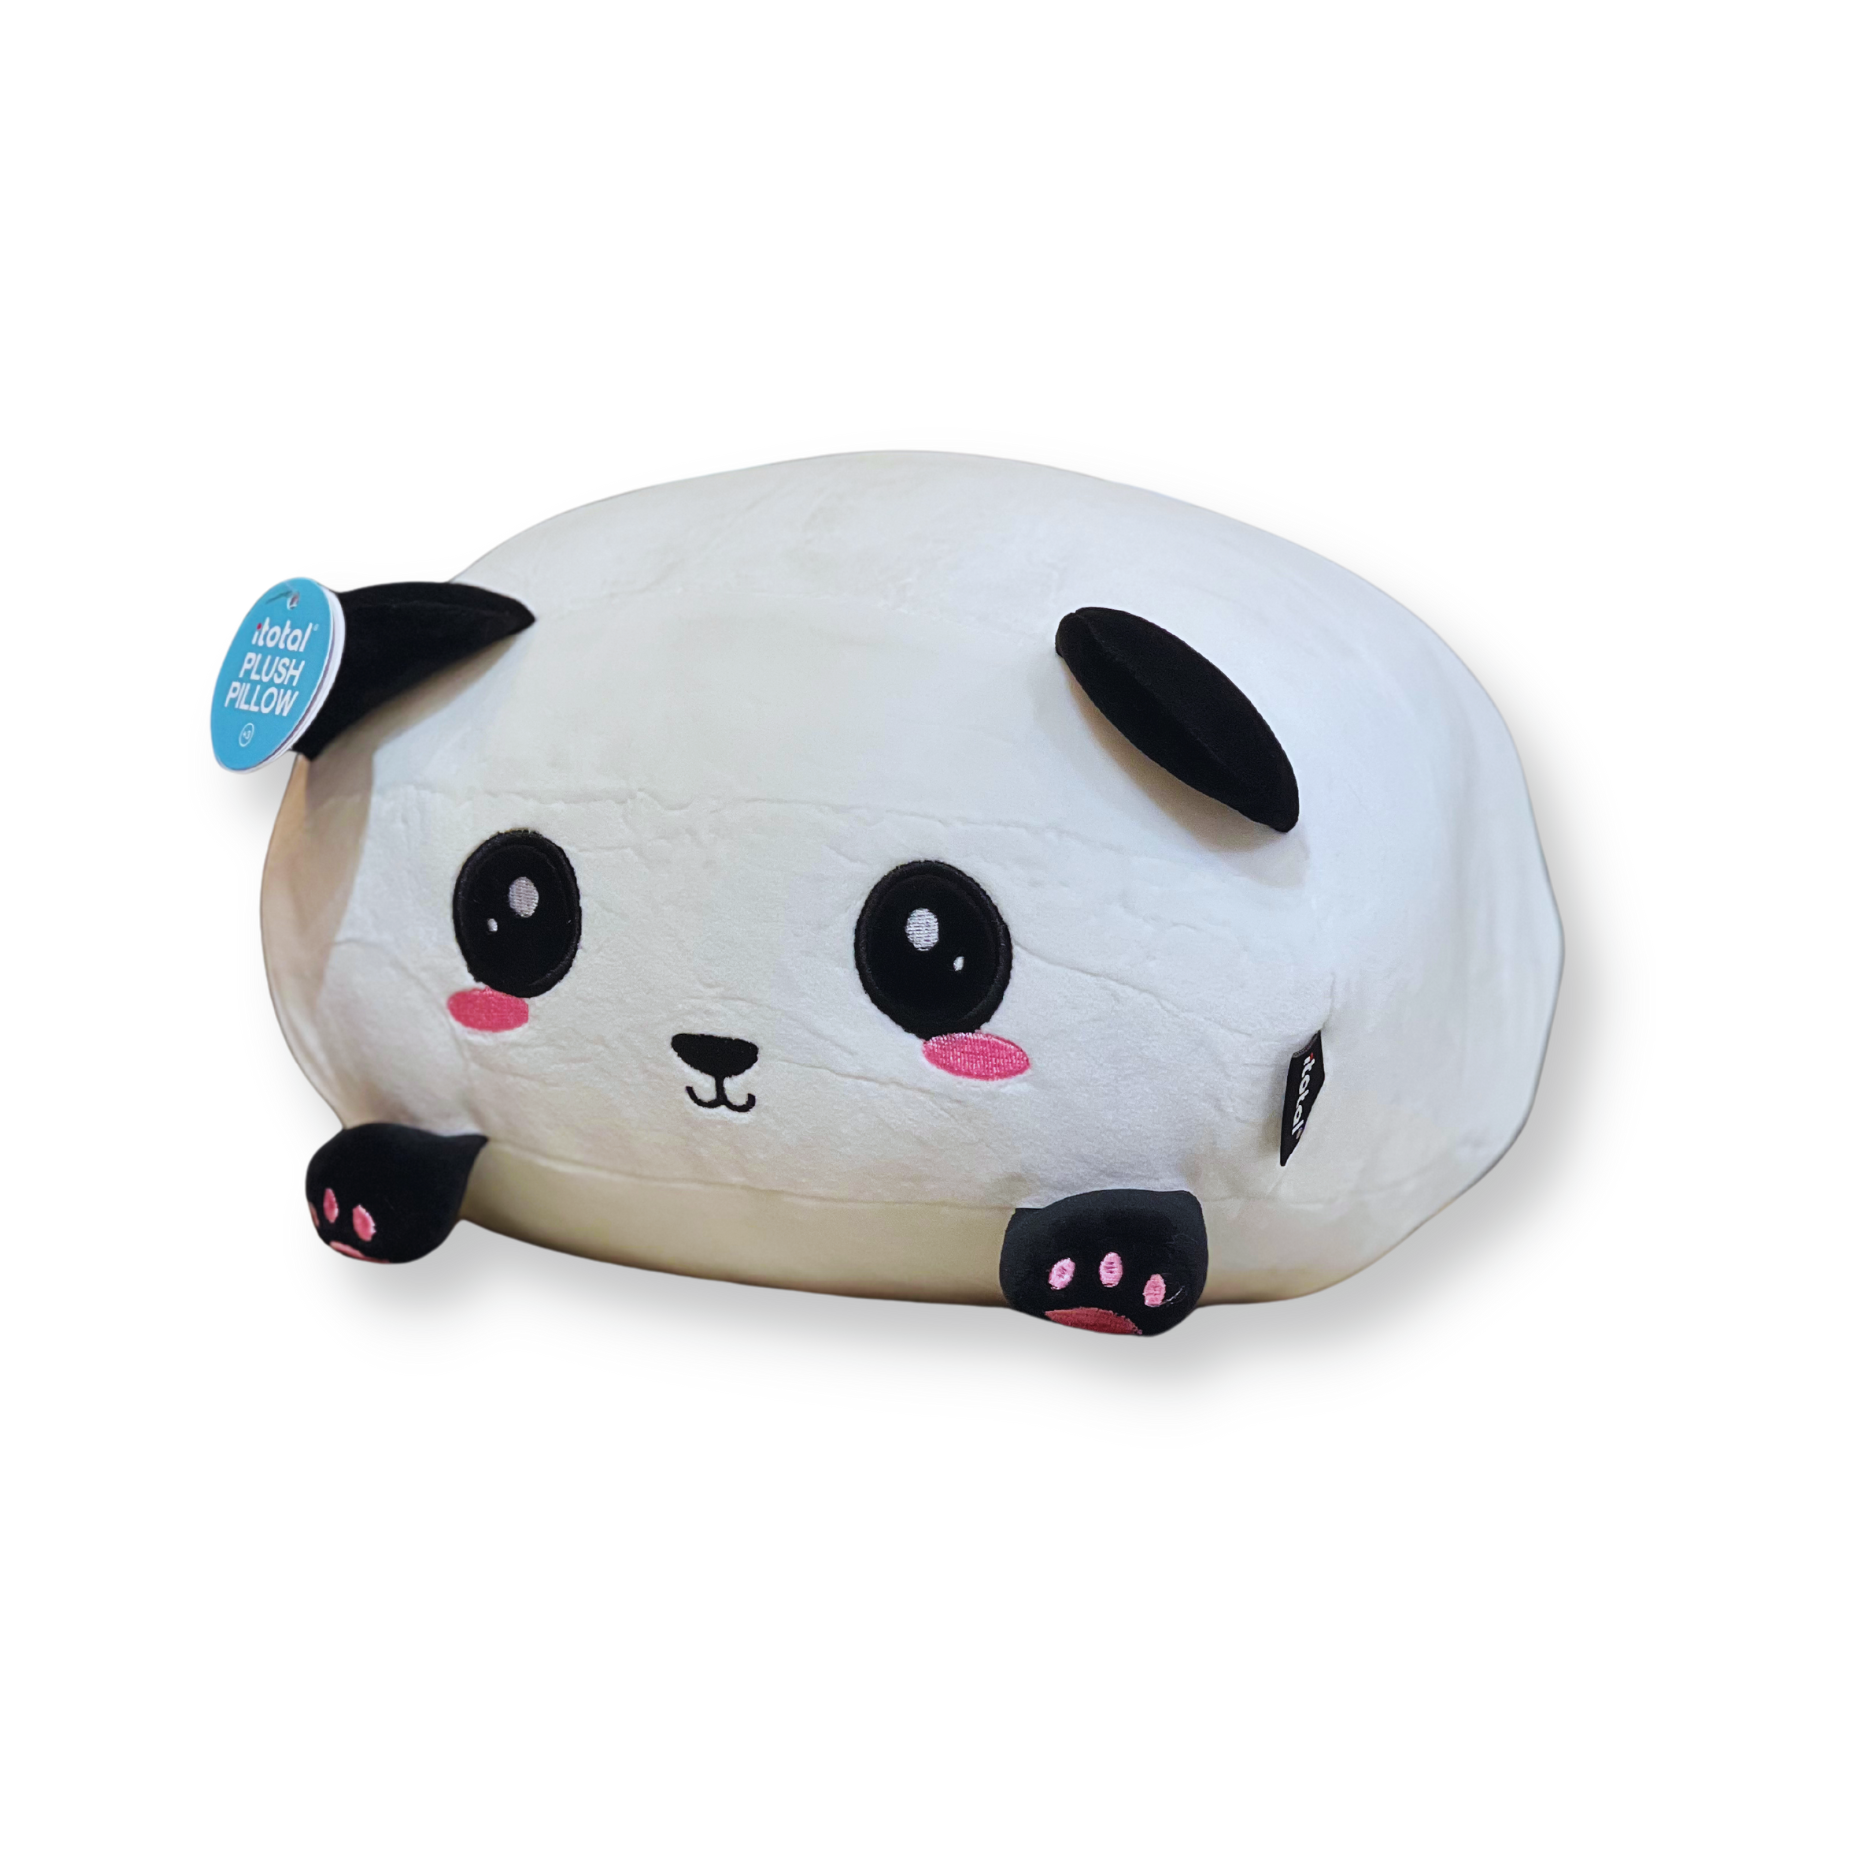 Squishmallow - Panda Pillow